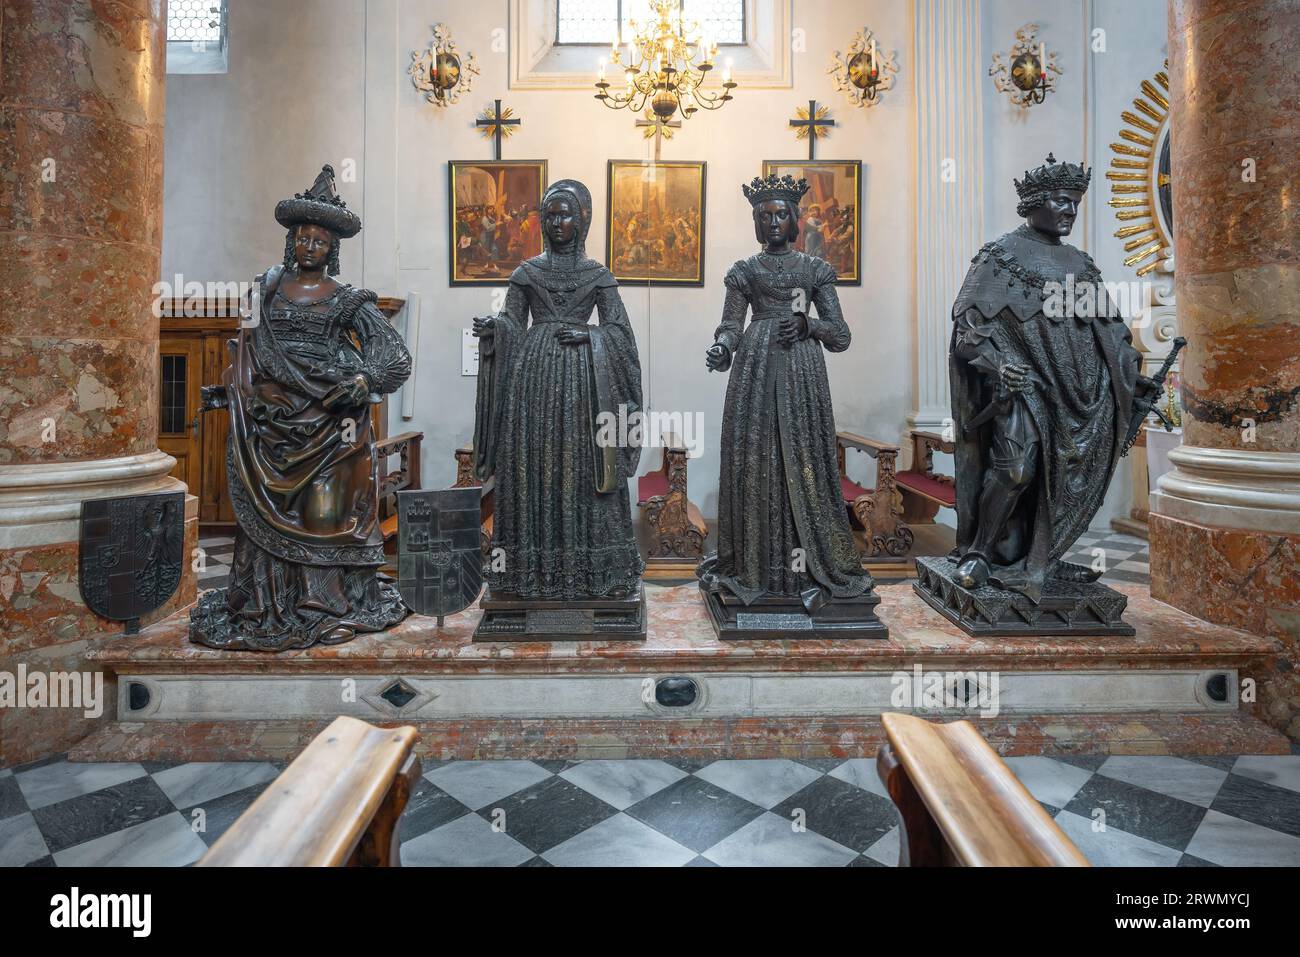 Statuen von Erzherzogin Kymburgis, Margarete von Savoyen, Bianca Maria Sforza und Erzherzog Sigismund in der Hofkirche - Innsbruck, Österreich Stockfoto